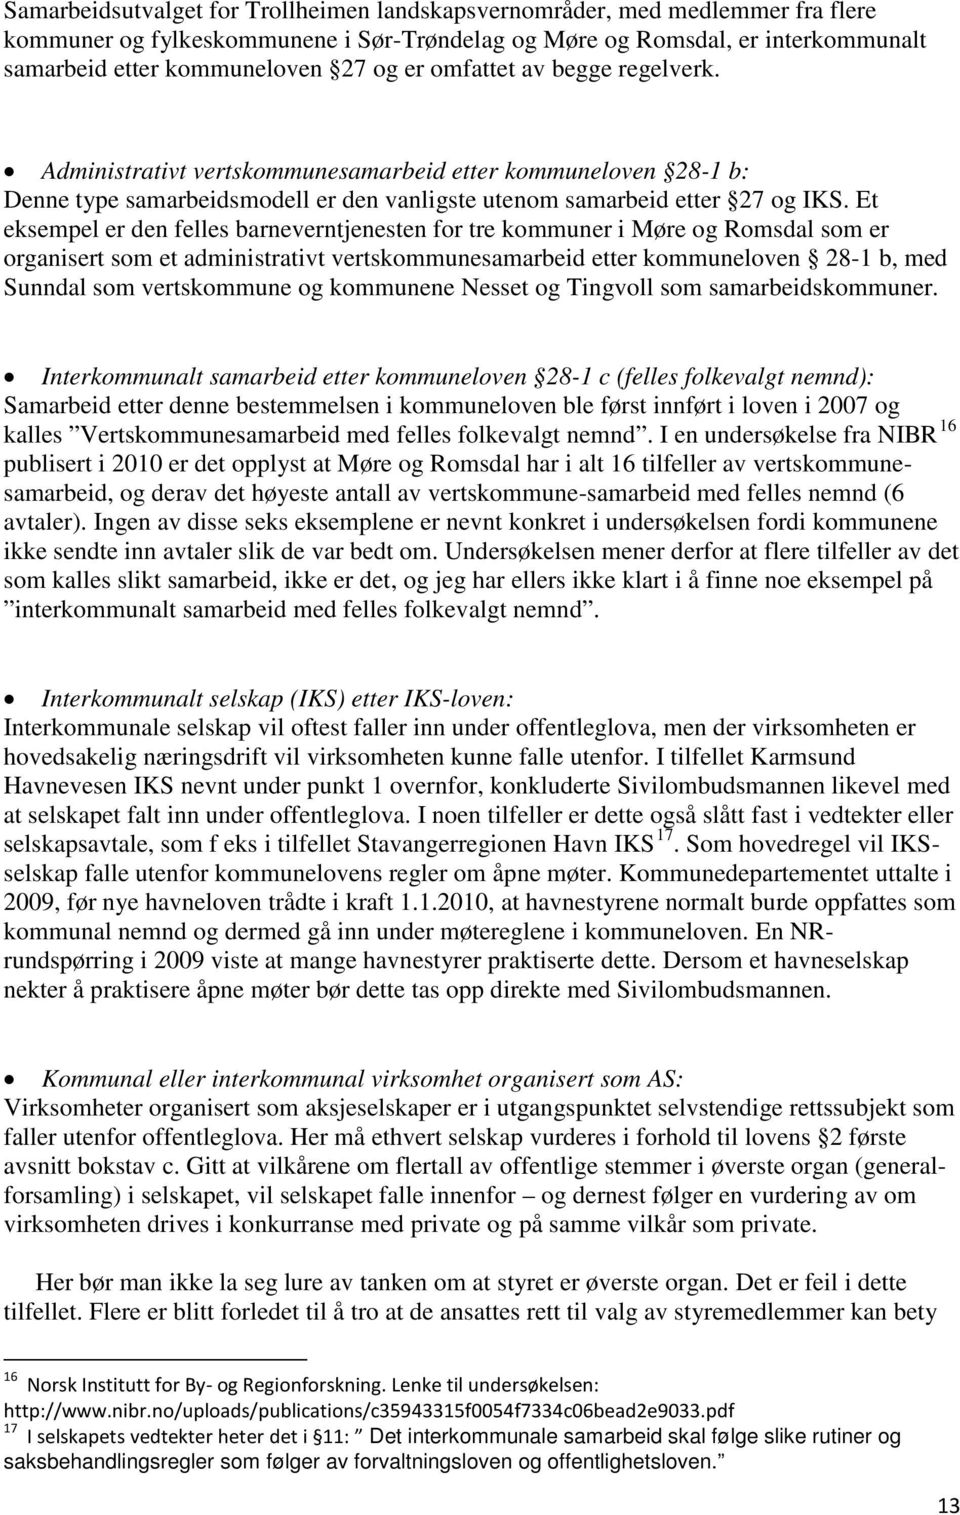 Et eksempel er den felles barneverntjenesten for tre kommuner i Møre og Romsdal som er organisert som et administrativt vertskommunesamarbeid etter kommuneloven 28-1 b, med Sunndal som vertskommune